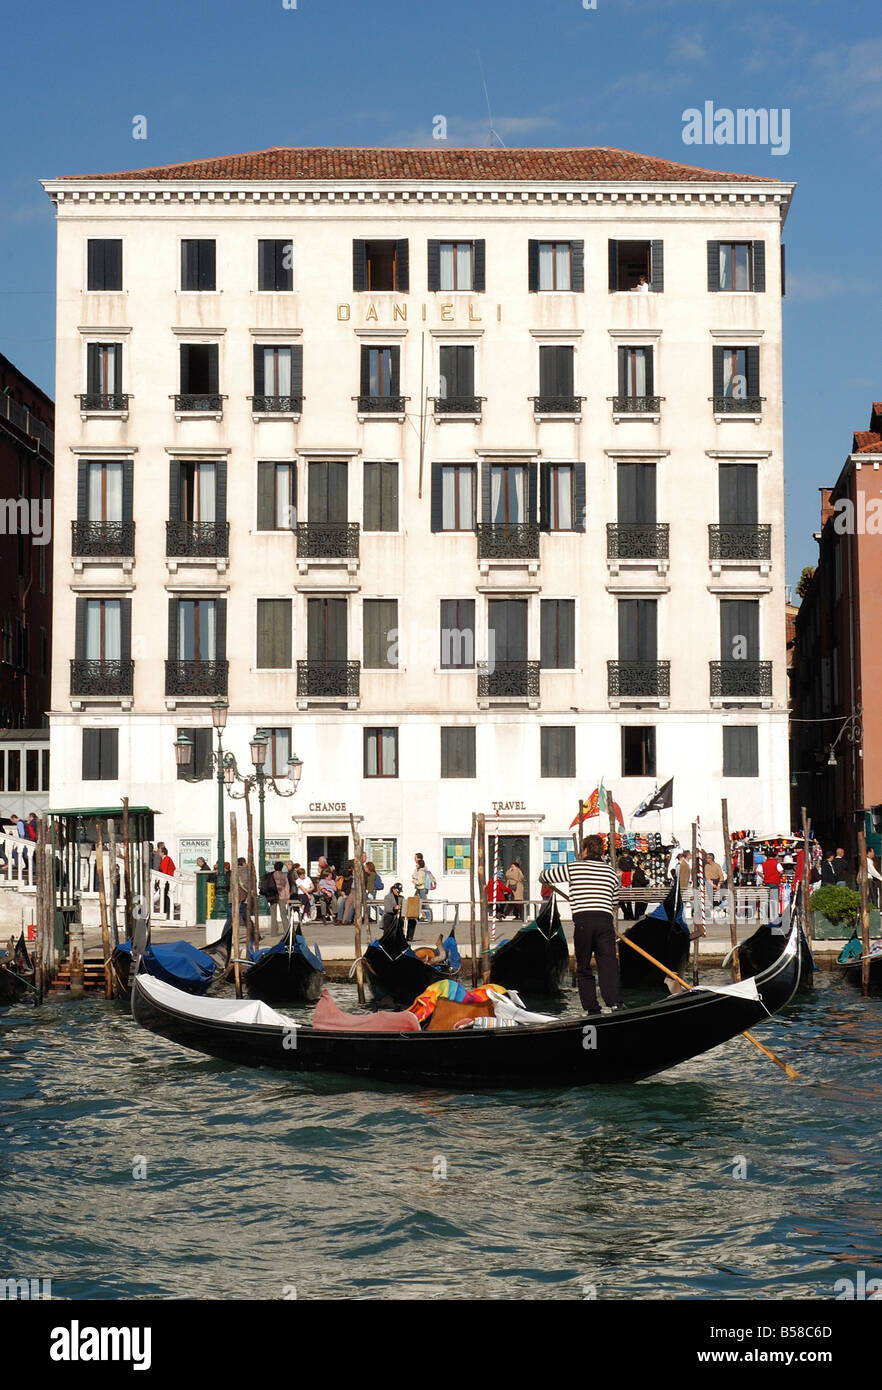 Venise Italie romantique Venise gondoles traditionnelles ou bateaux. L'Hotel Danieli Banque D'Images